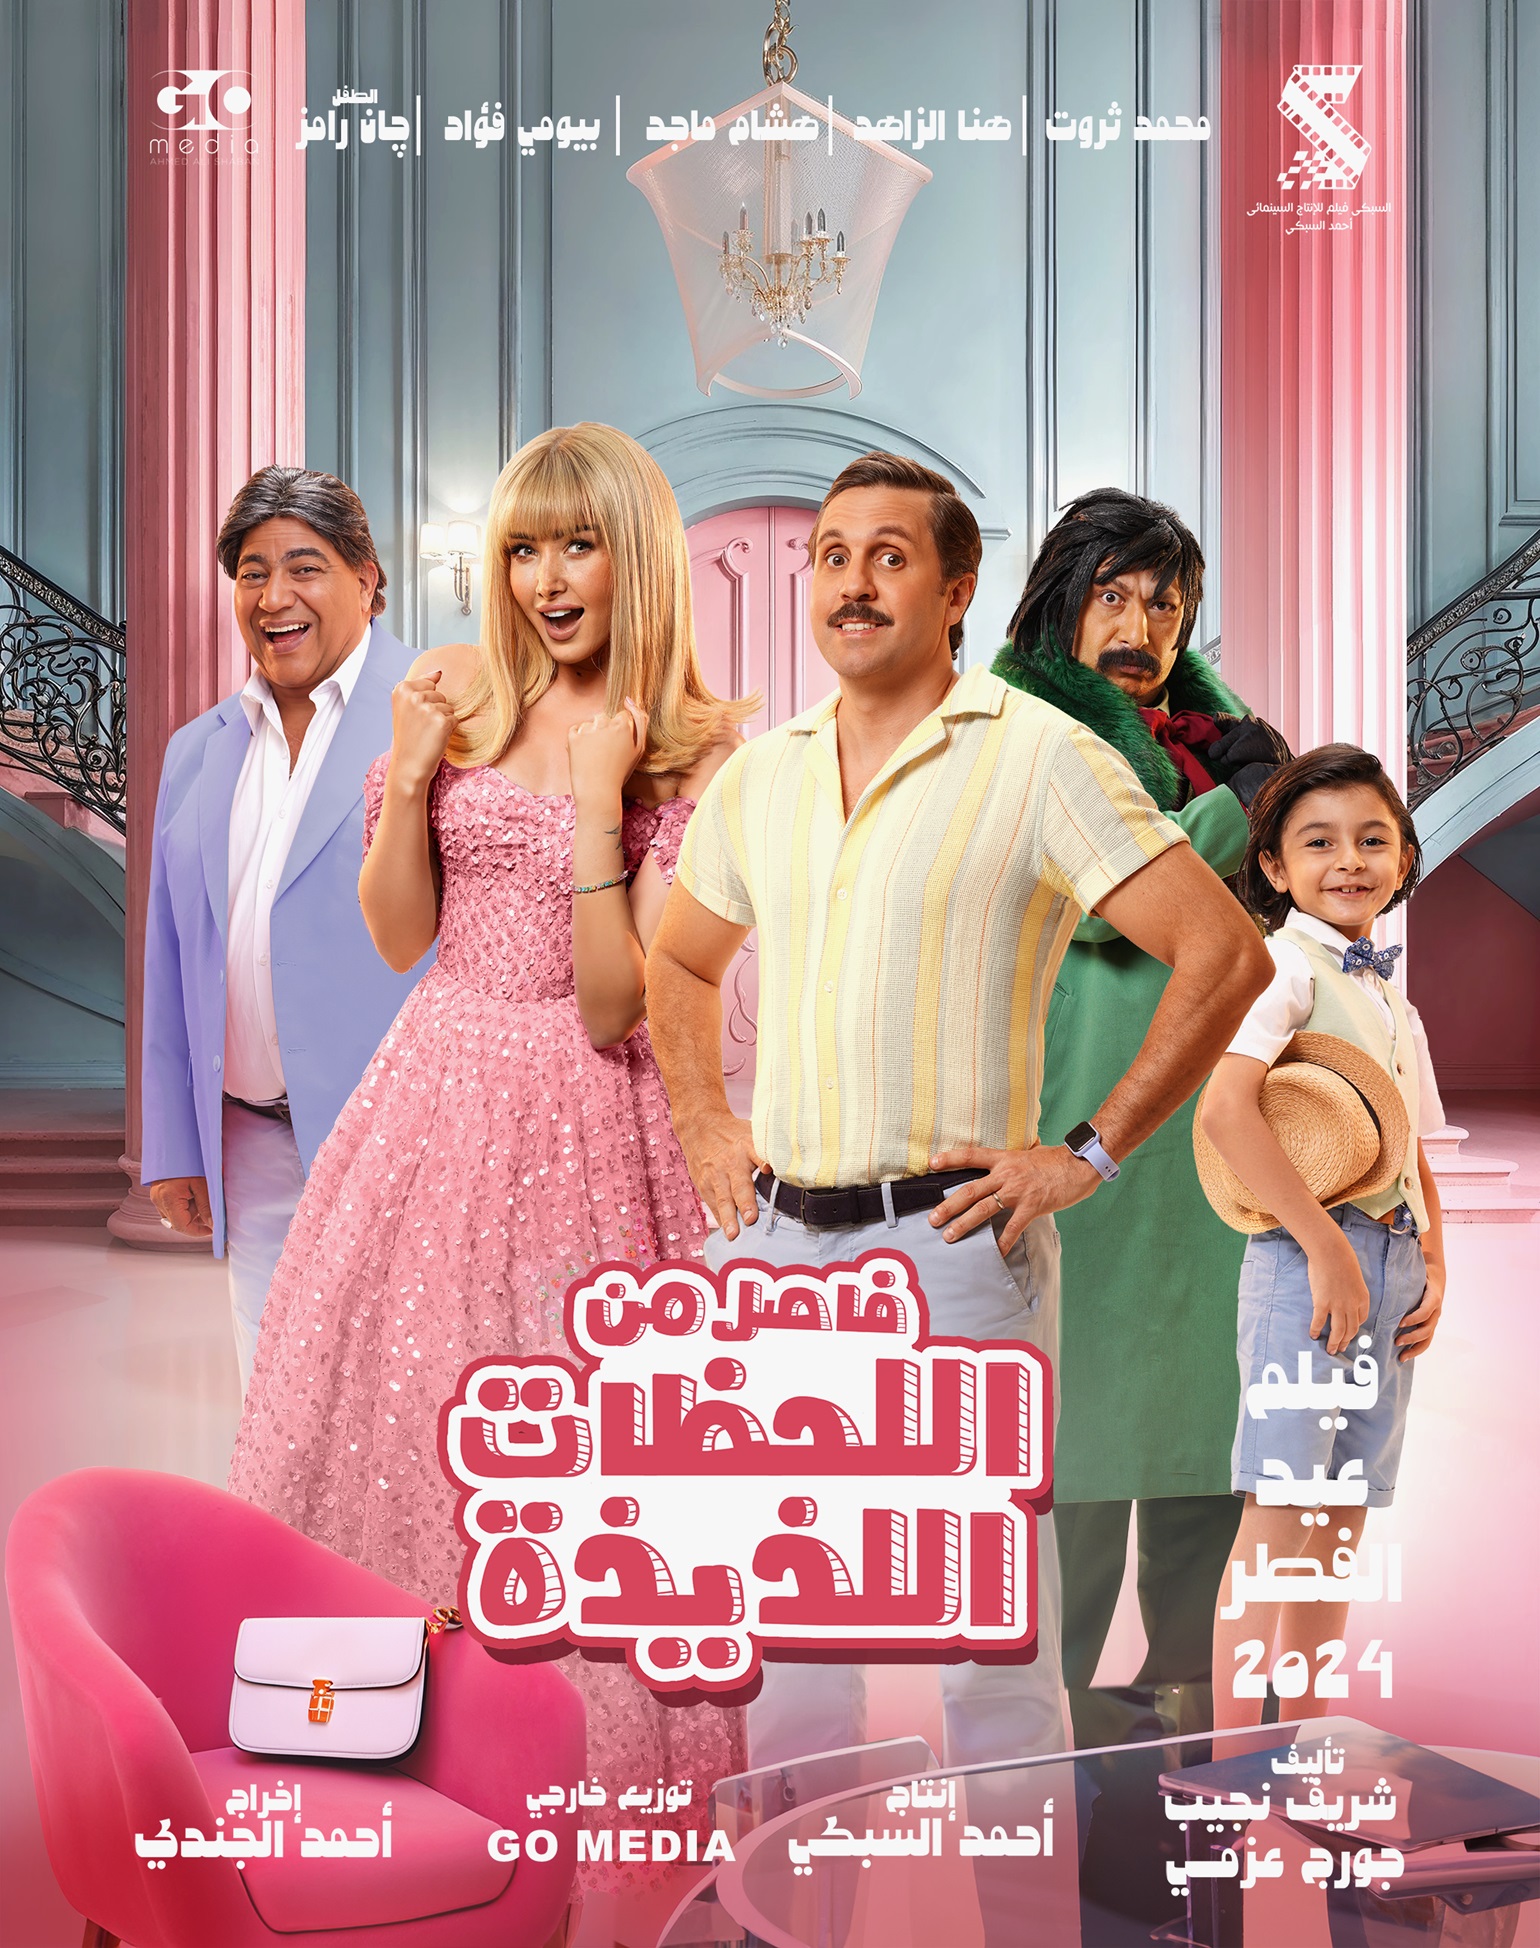 عرض الفيلم المصري "فاصل من اللحظات اللذيذة" بدول الخليج في عيد الفطر